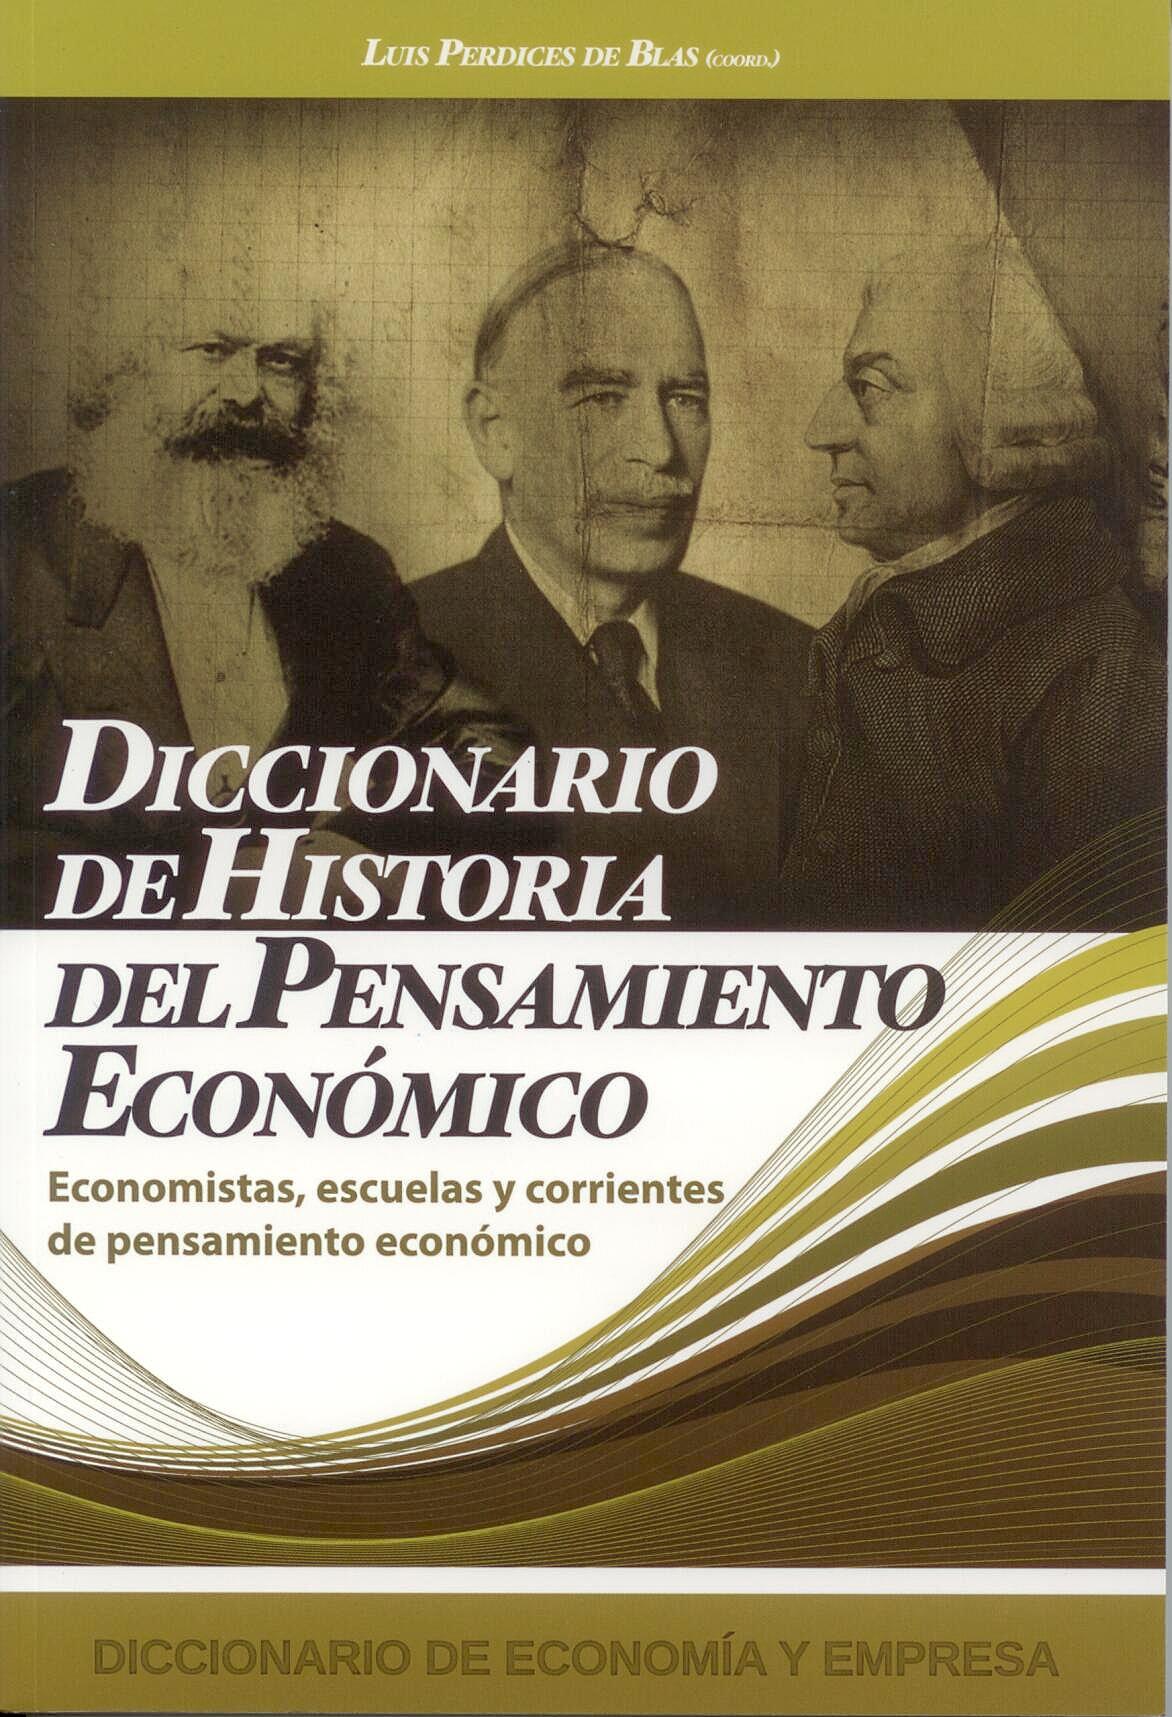 Diccionario de Historia del Pensamiento Economico "Economistas, Escuelas y Corrientes de Pensamiento Economico"